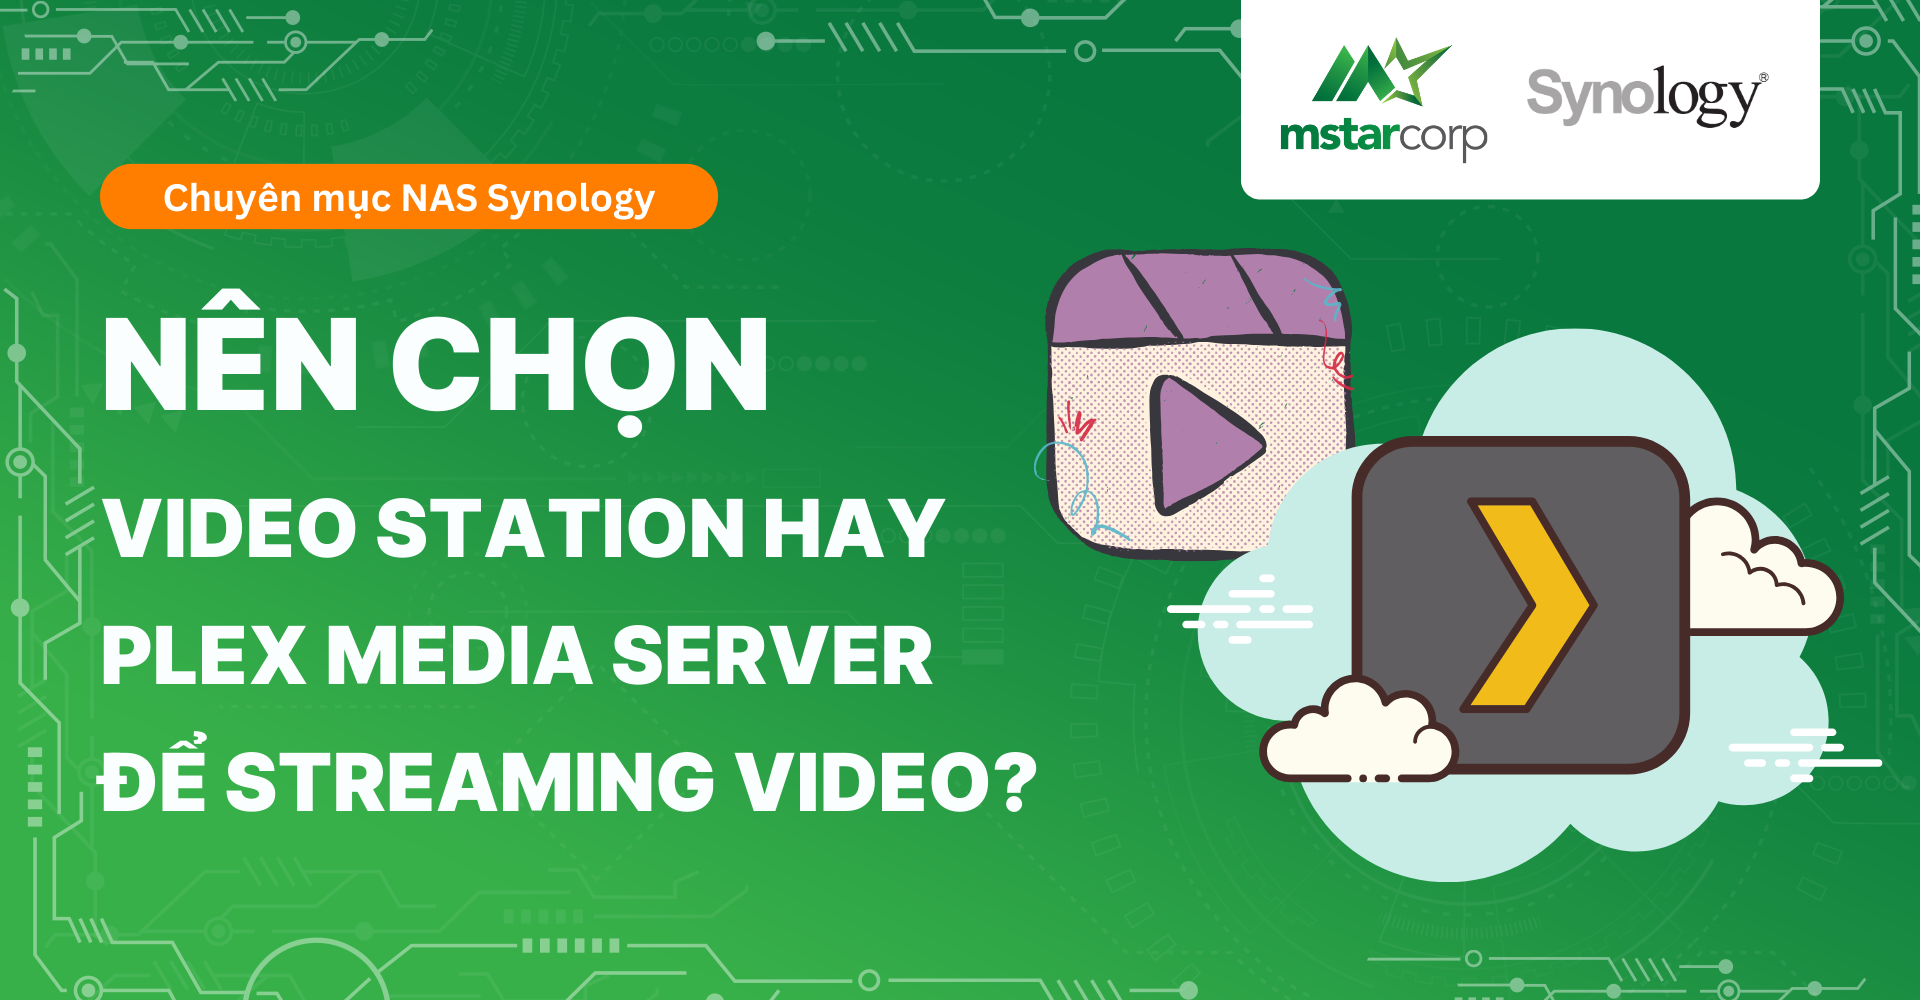 Nên chọn Video Station hay Plex Media Server để streaming video?